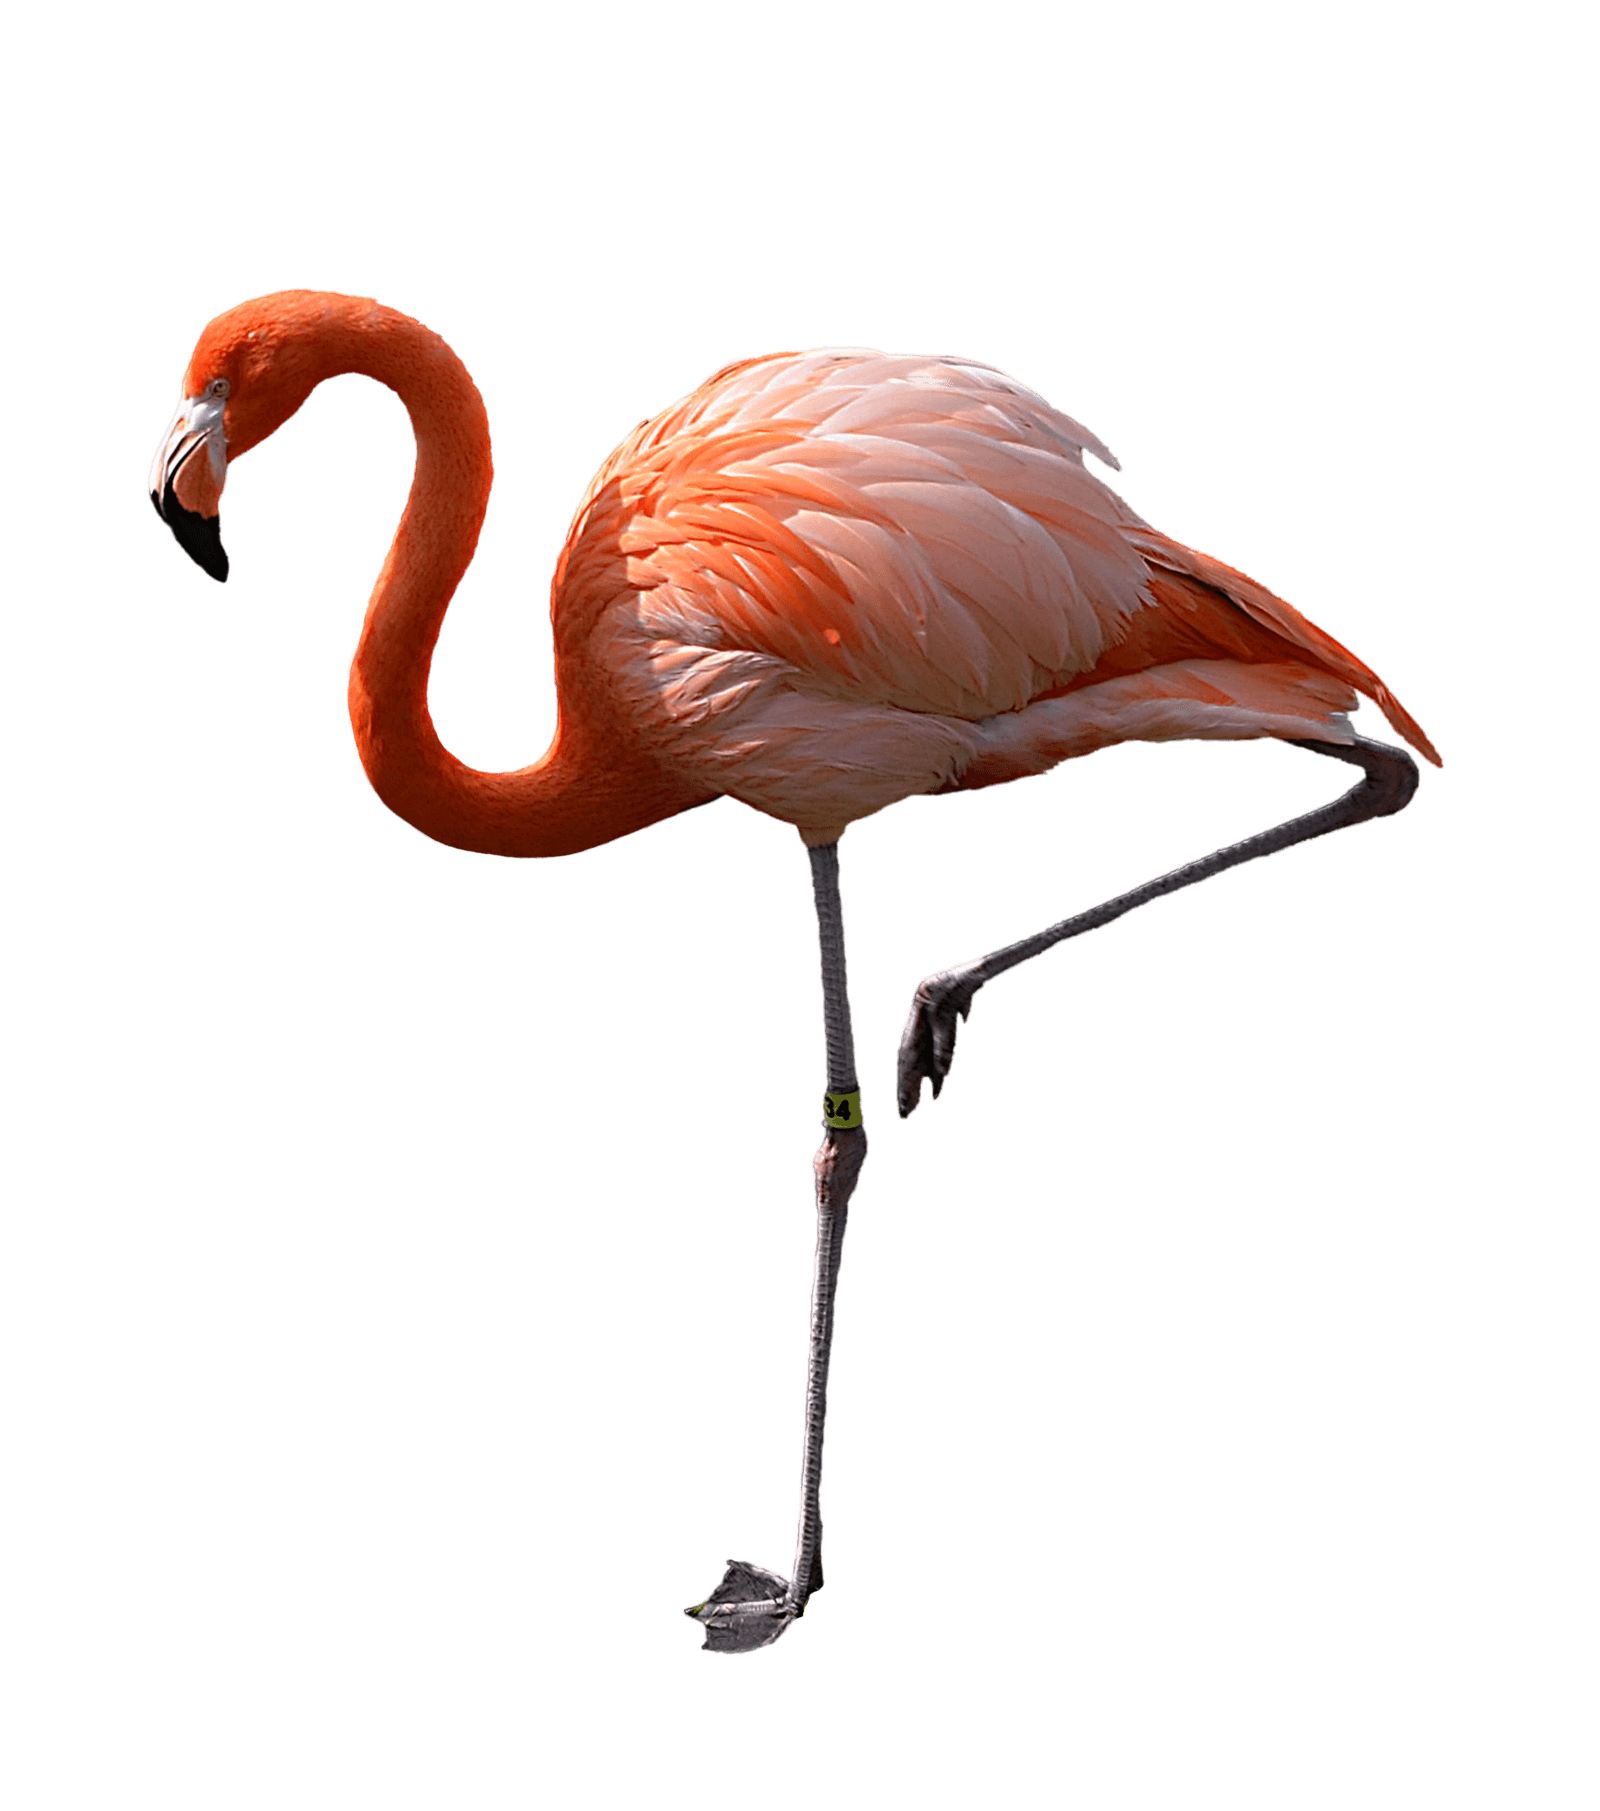 flamingo clipart foot